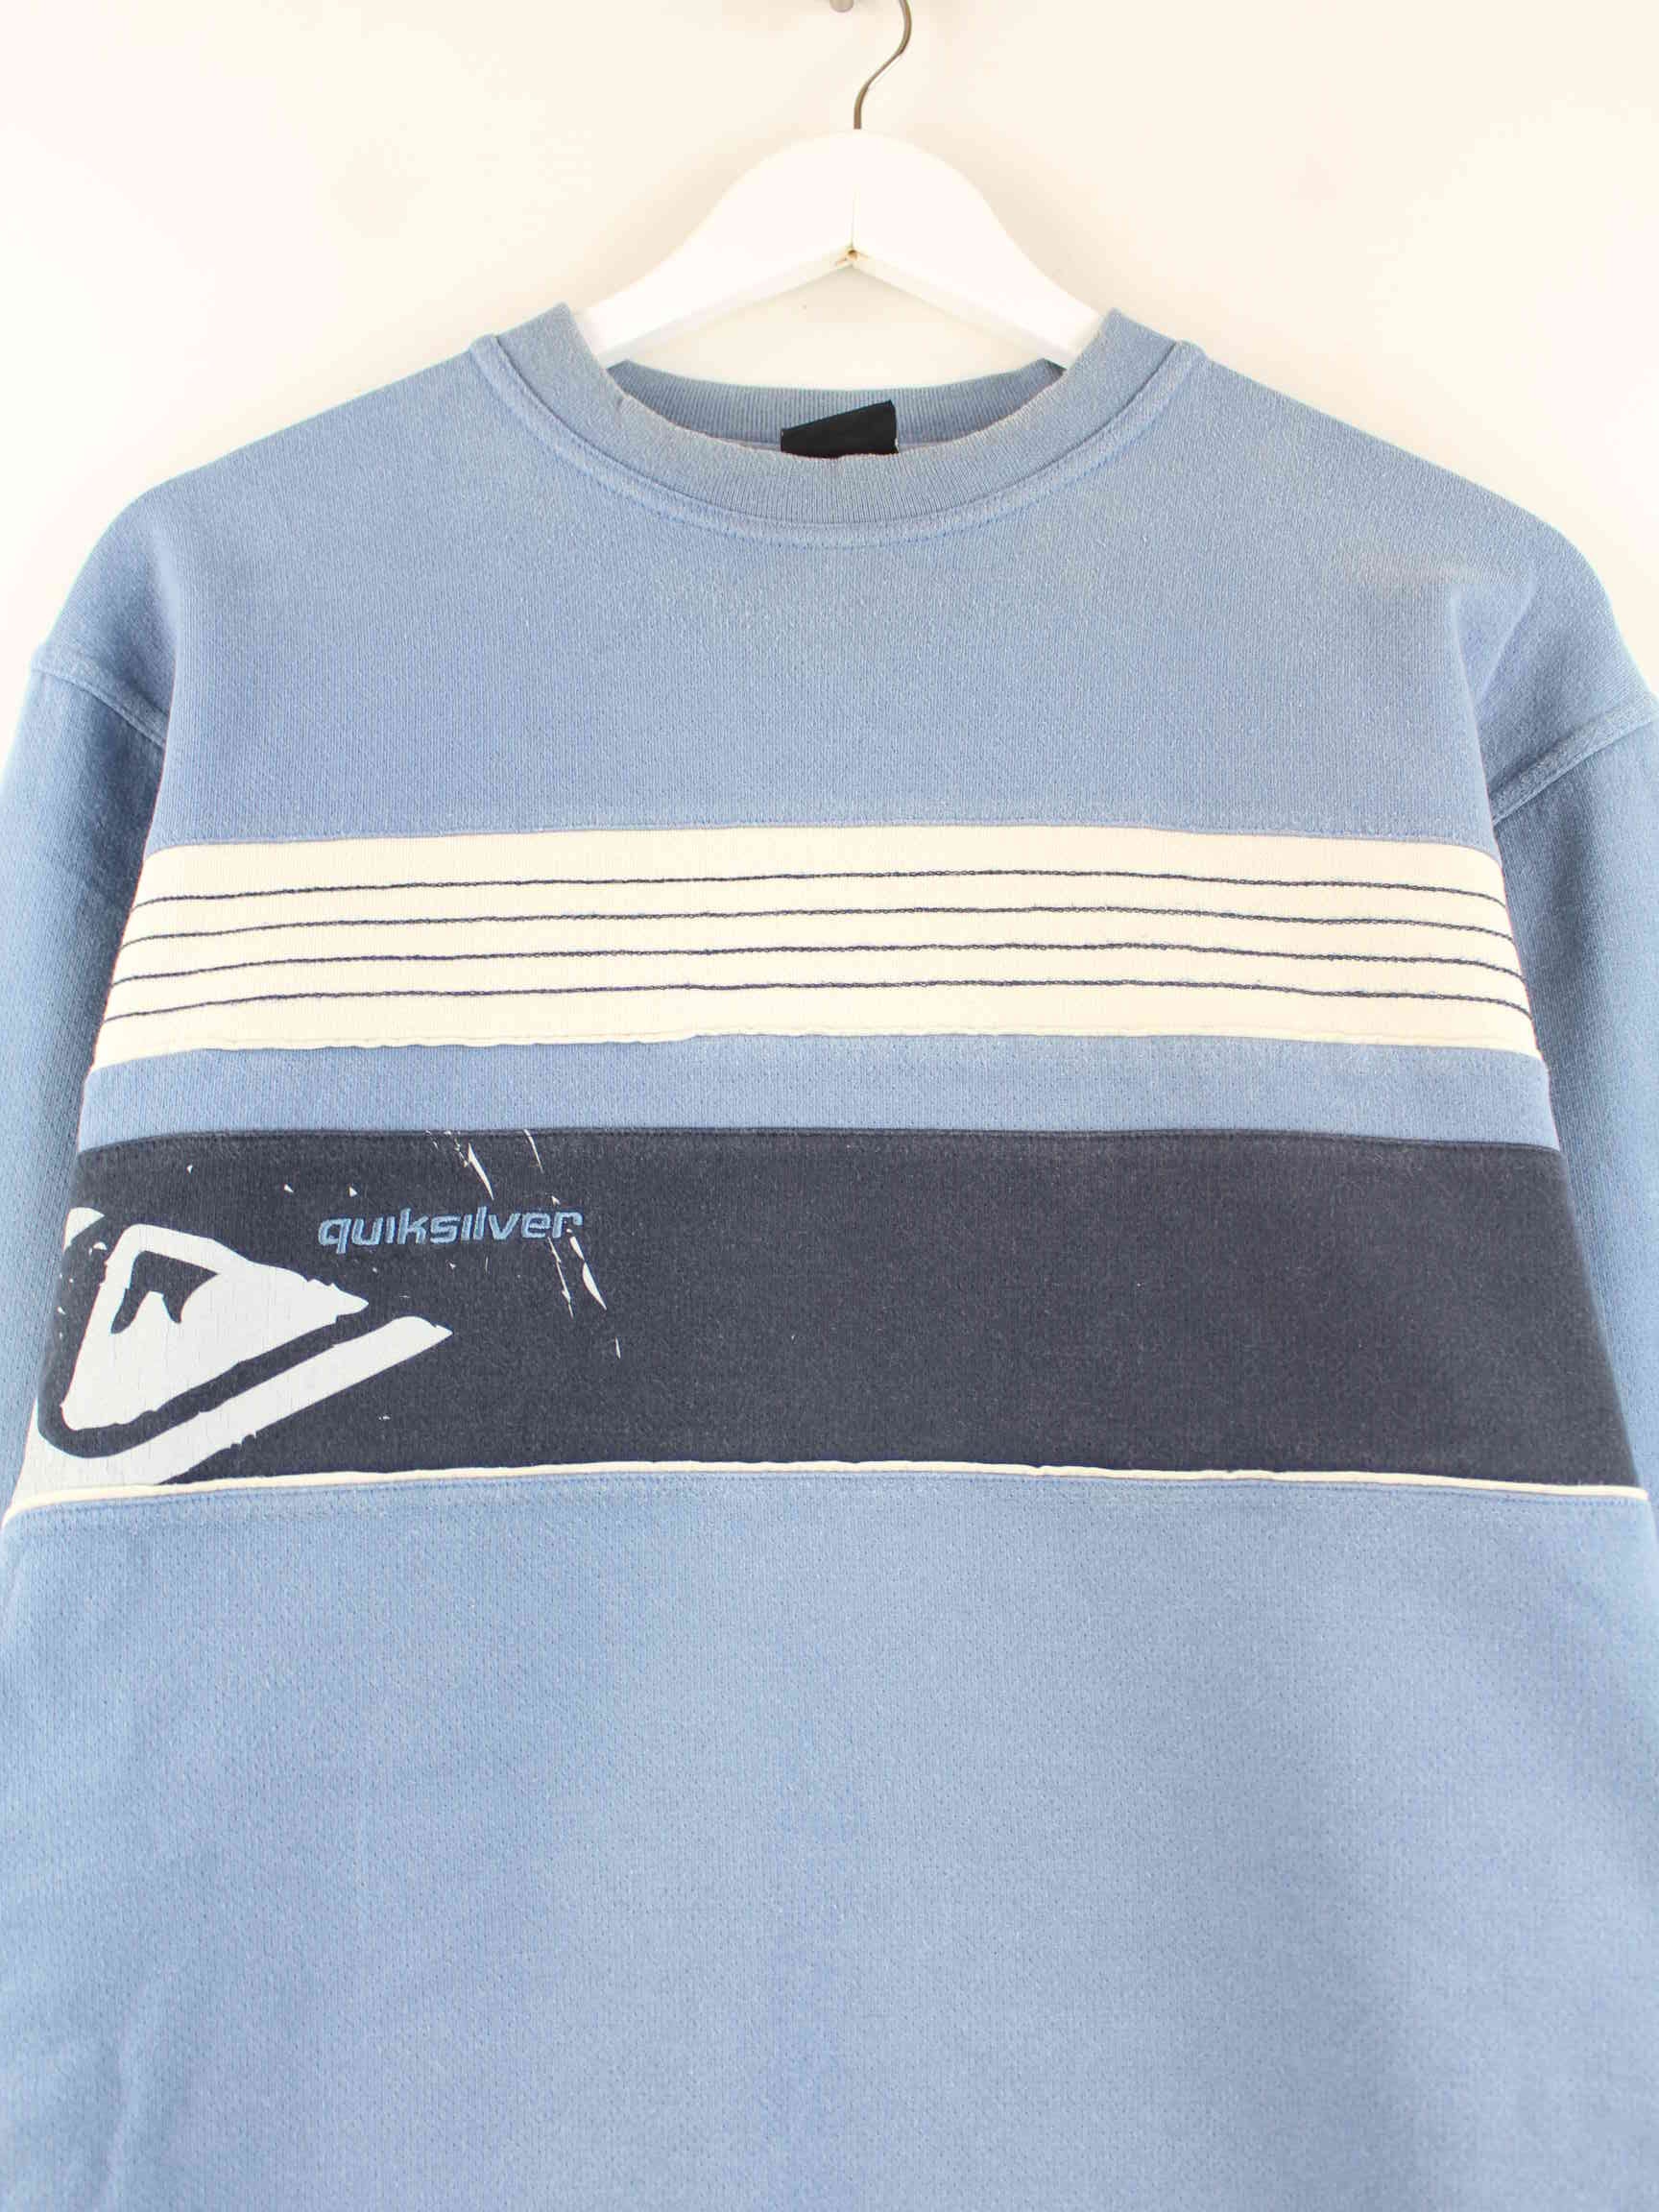 Quiksilver 90s Vintage Print Sweater Blau S (detail image 1)